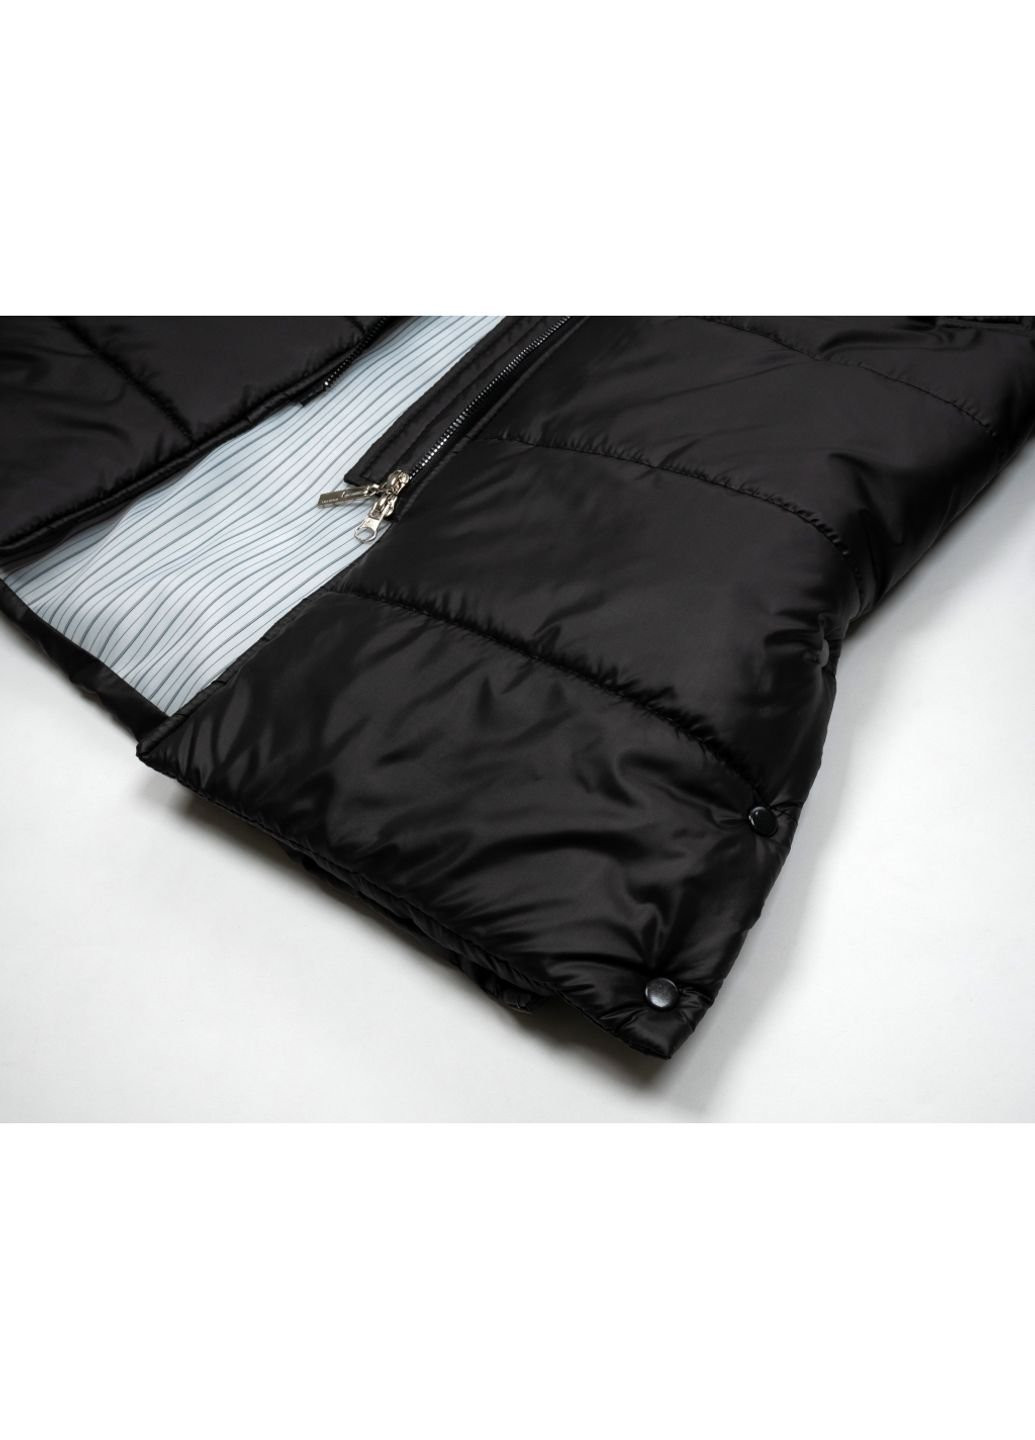 Черная демисезонная куртка пальто "donna" (21705-158g-black) Brilliant